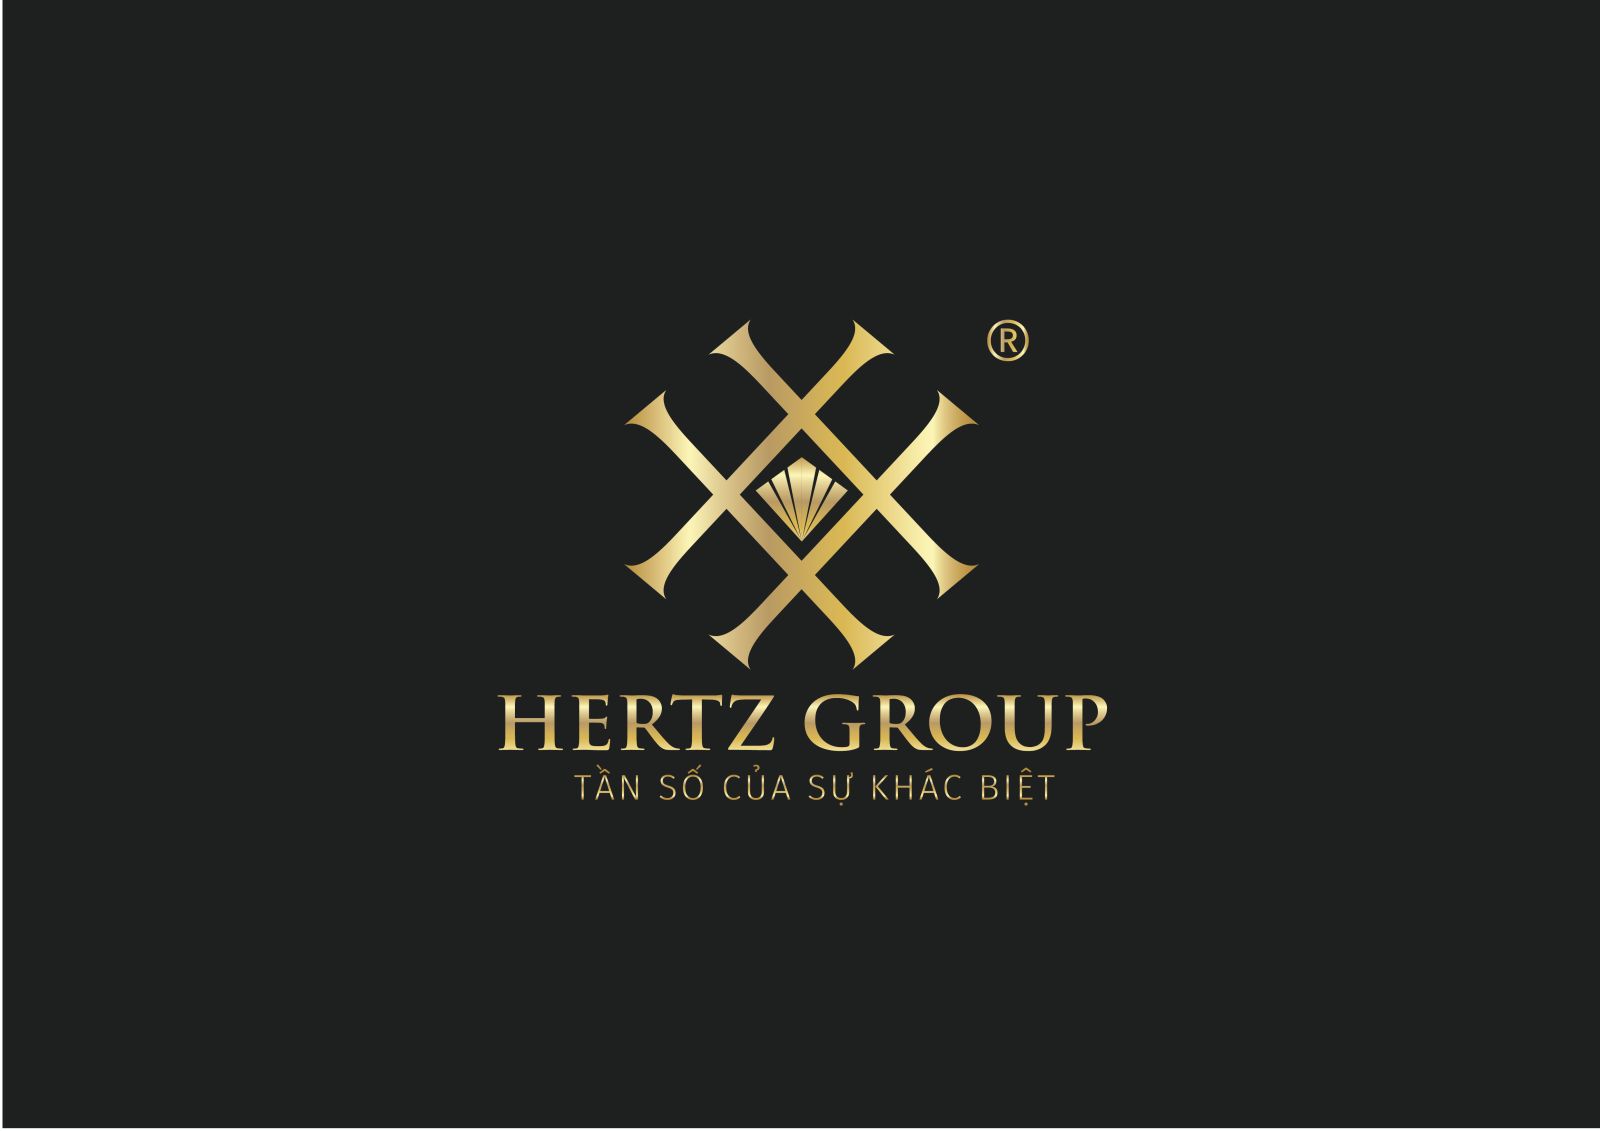 HERTZ GROUP